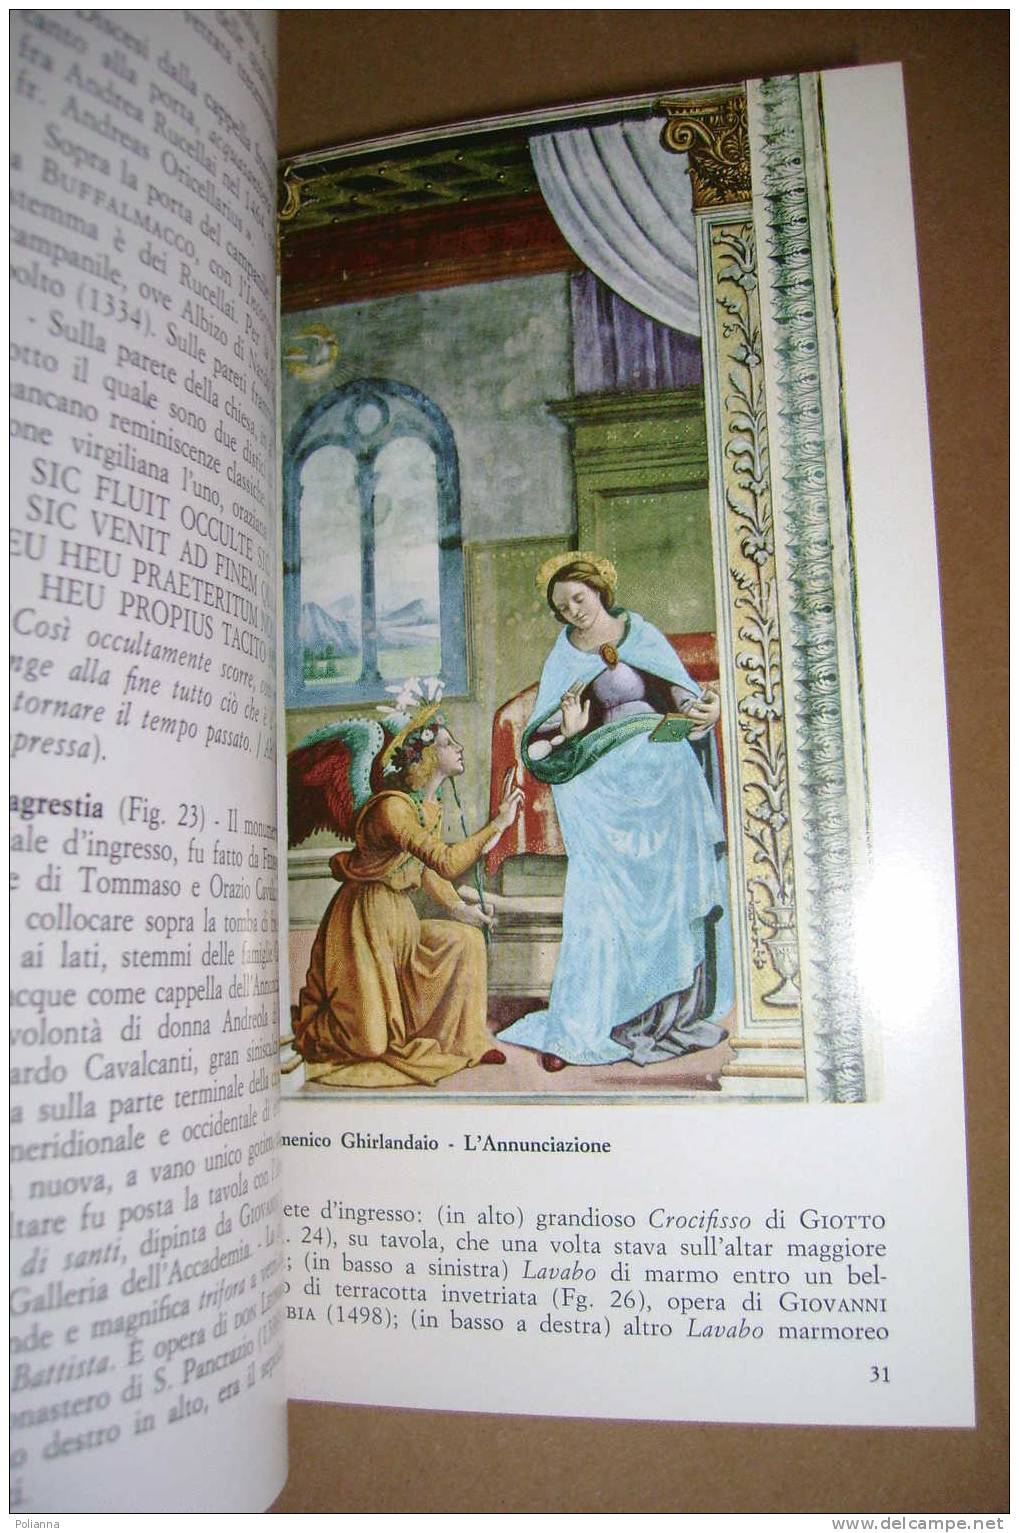 PAP/35 Guida Storico Artistica Di S.MARIA NOVELLA  E I Suo I Chiostri Monumentali Ed.Beccocci 1980 - Arts, Antiquity